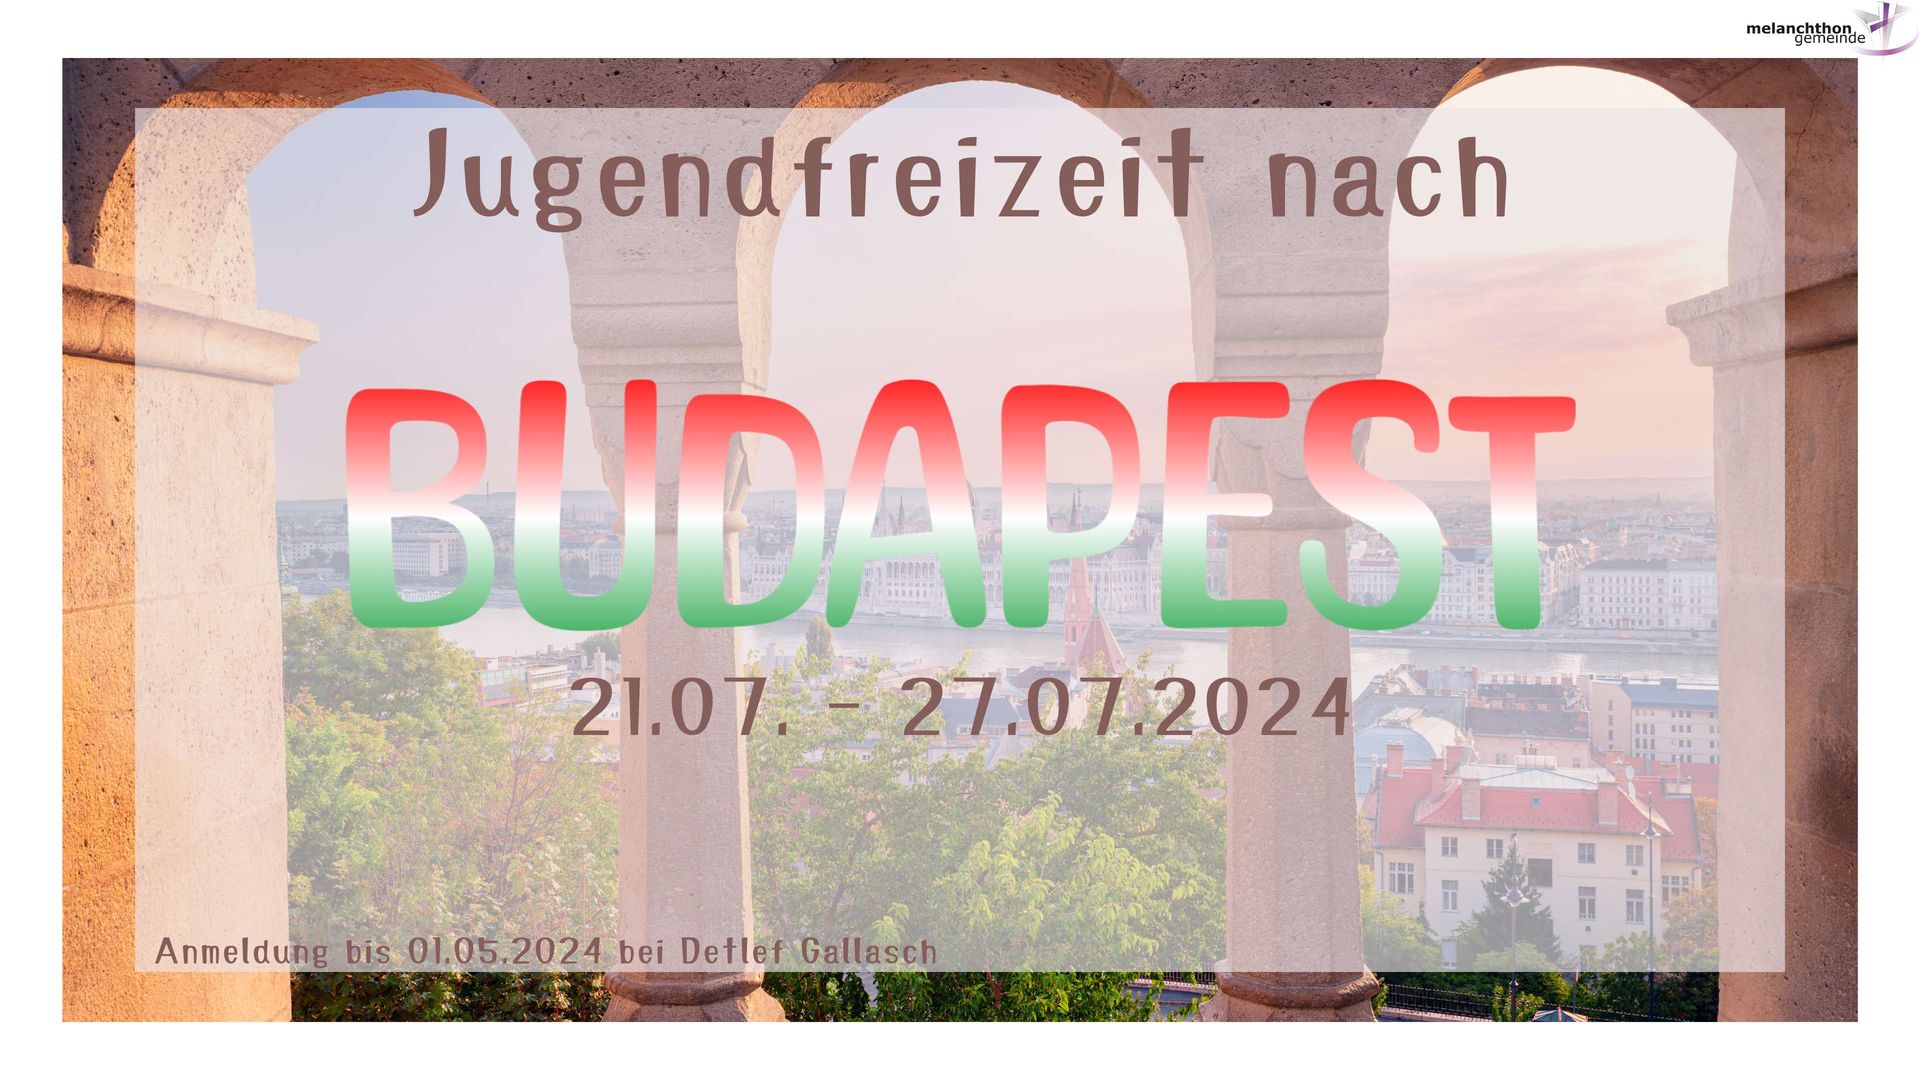 Jugendfreizeit nach Budapest